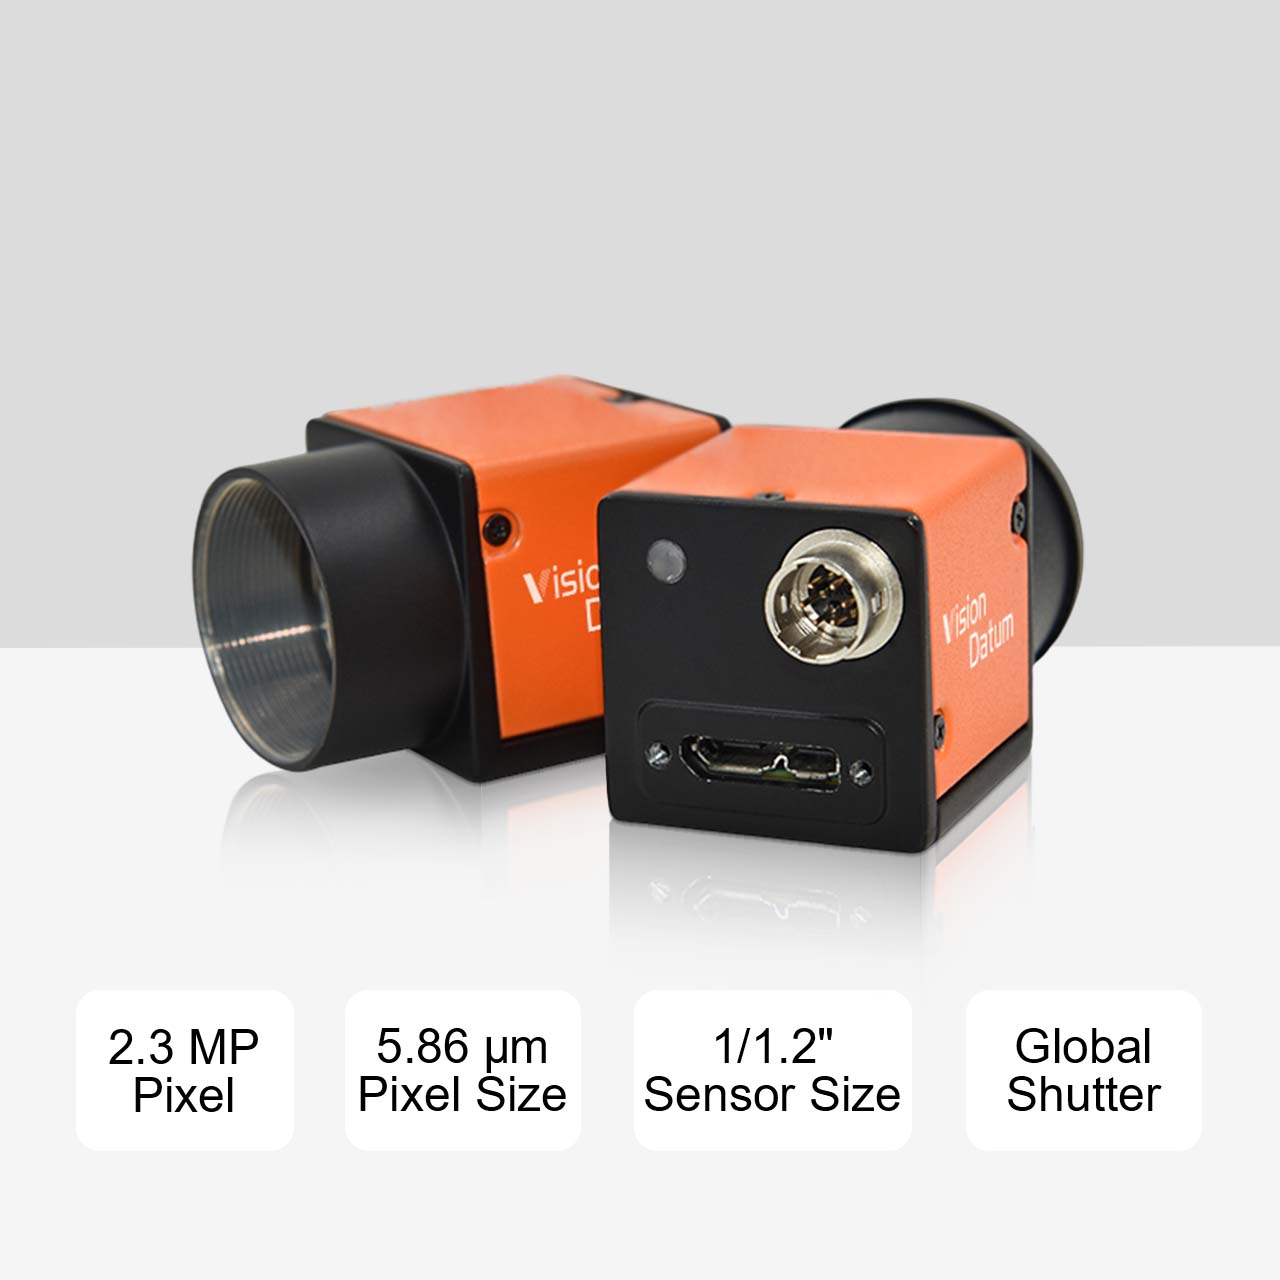 40 кадров в секунду IMX249 2,3 МП 5,86 мкм 1/1,2-дюймовая камера с глобальным затвором